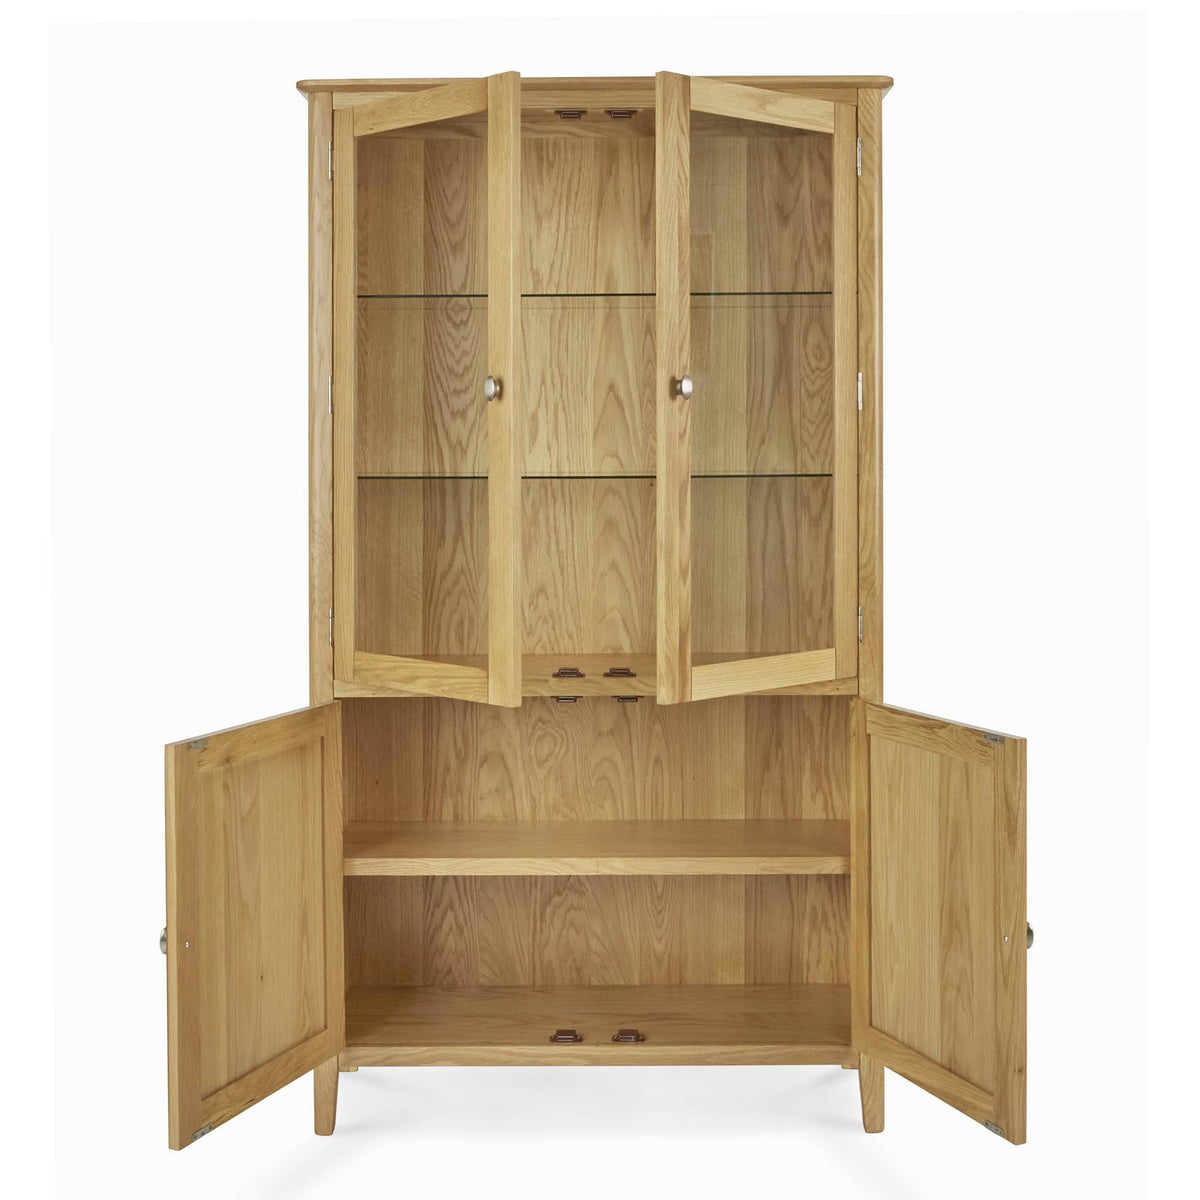 Alba Oak Display Cabinet - Front view with doors open